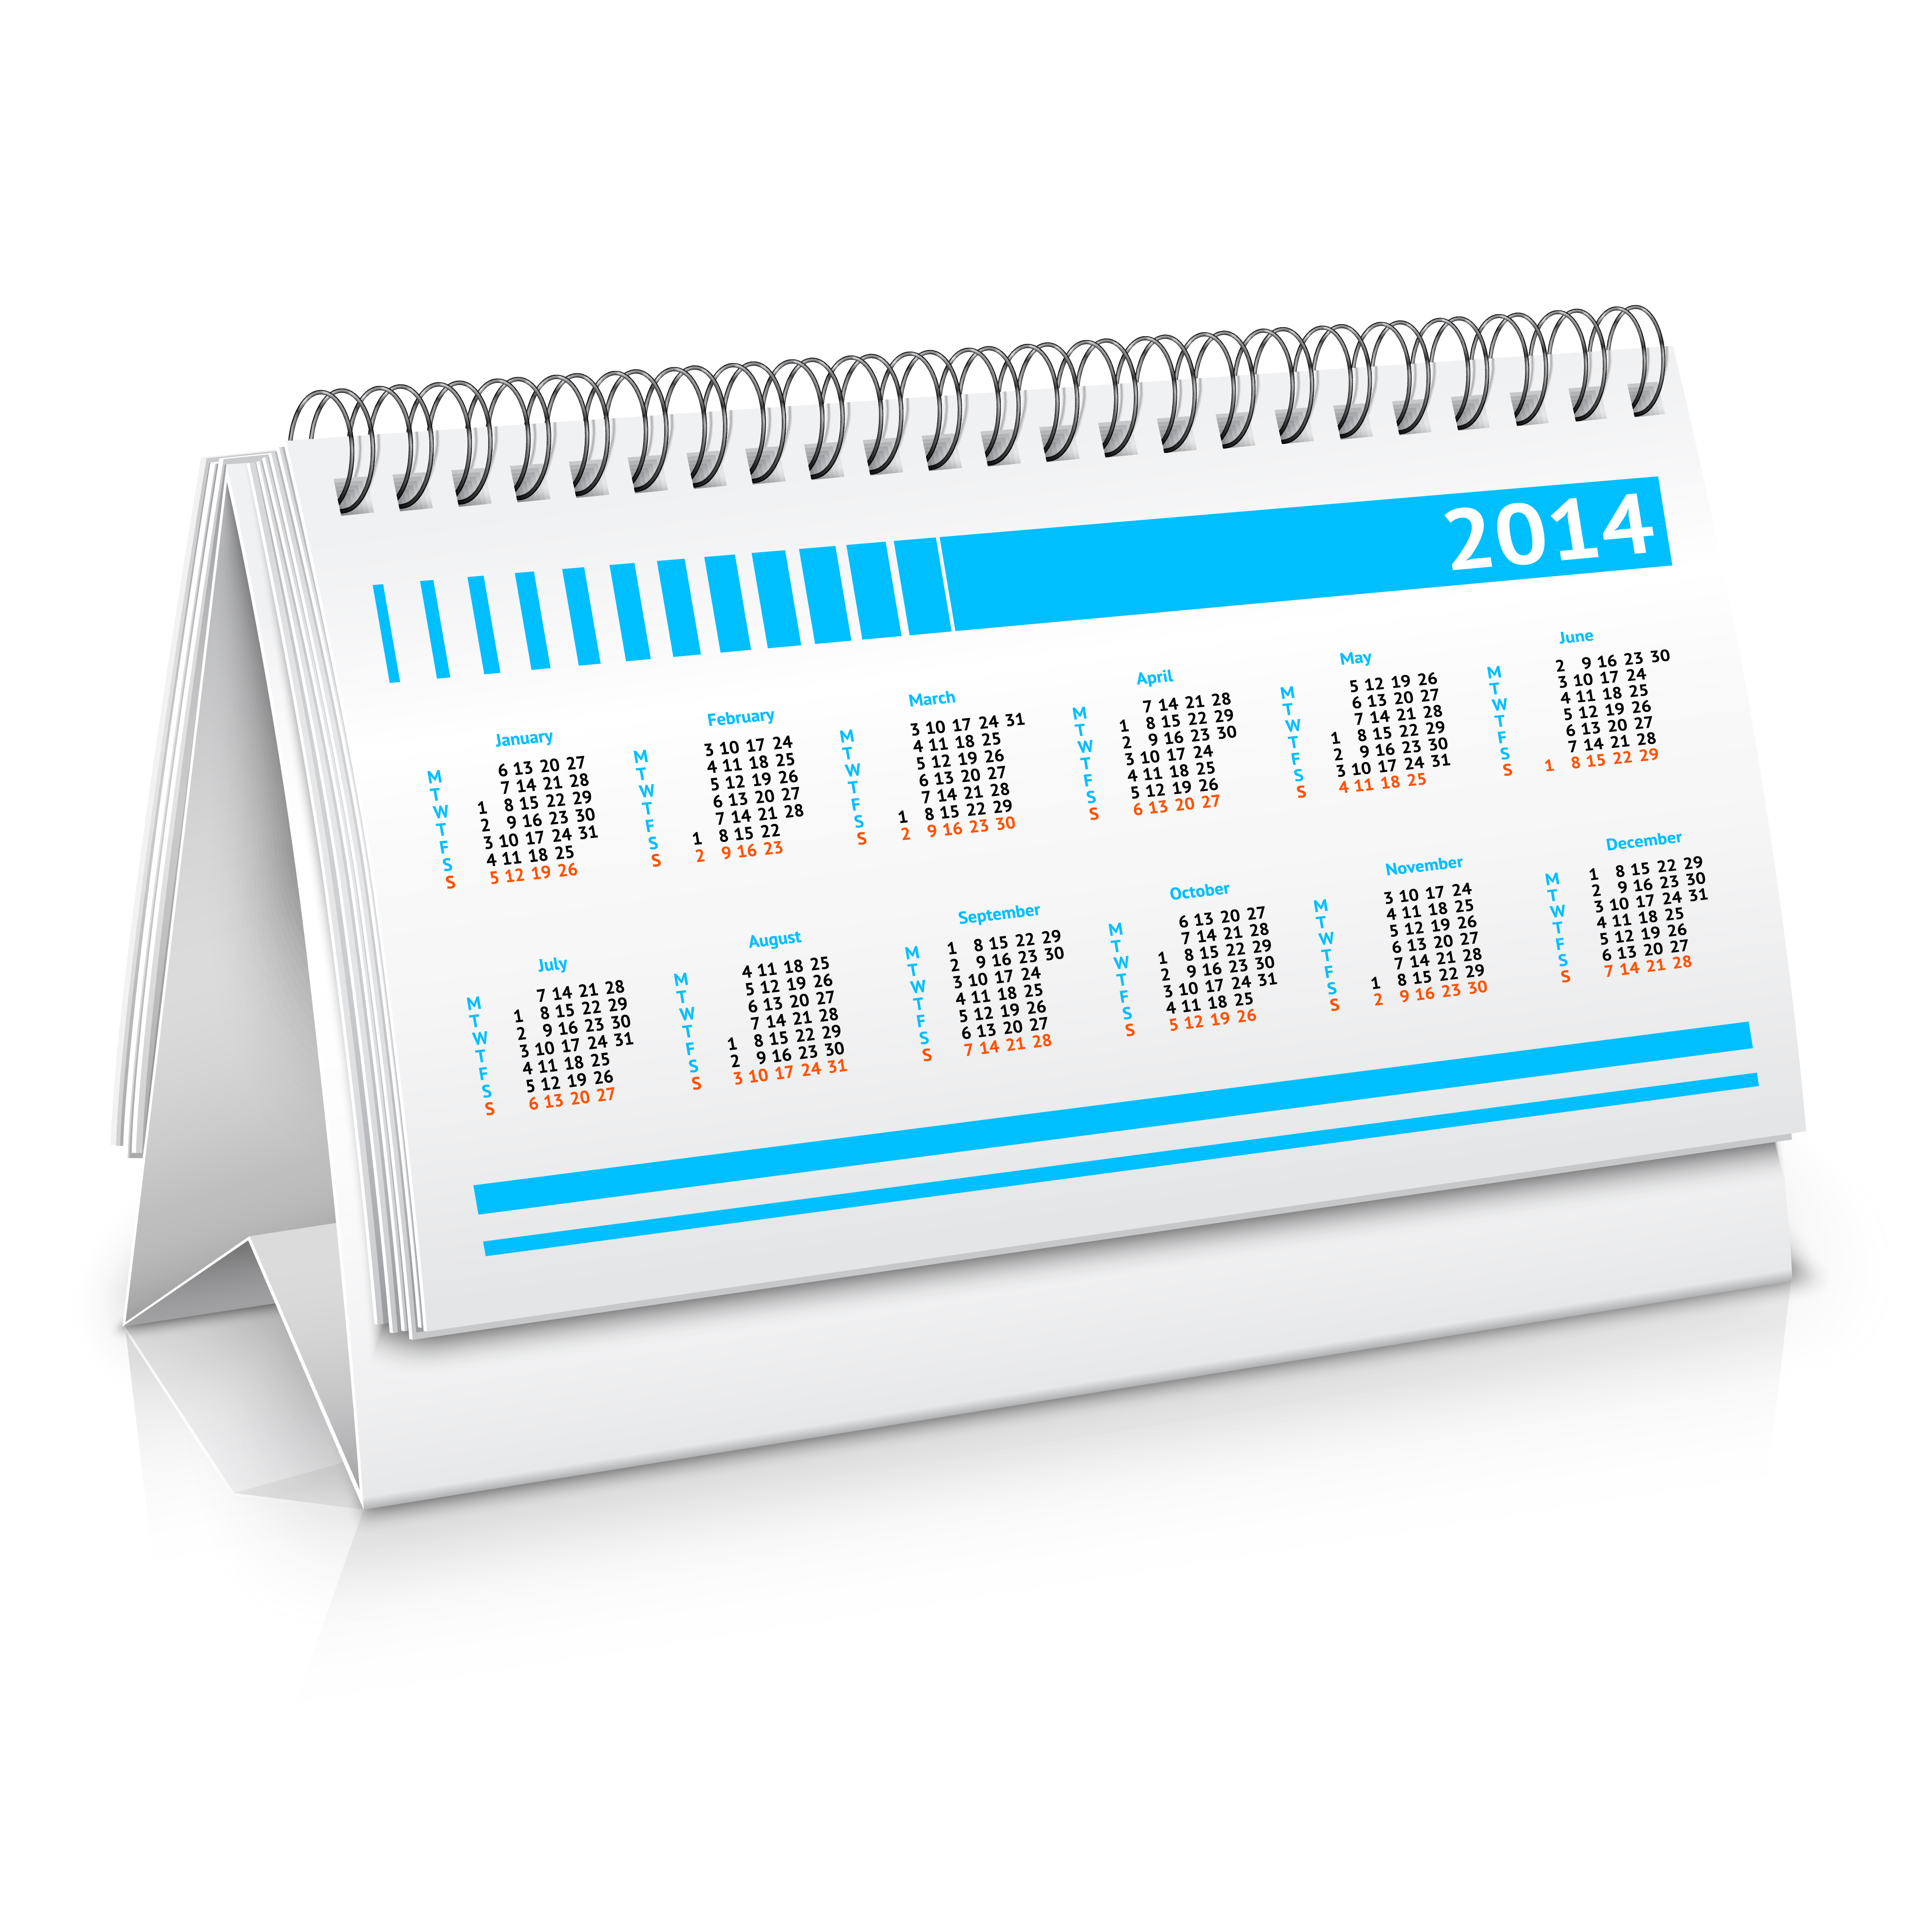 Download Desk calendar mockup - Download Free Vectors, Clipart ...